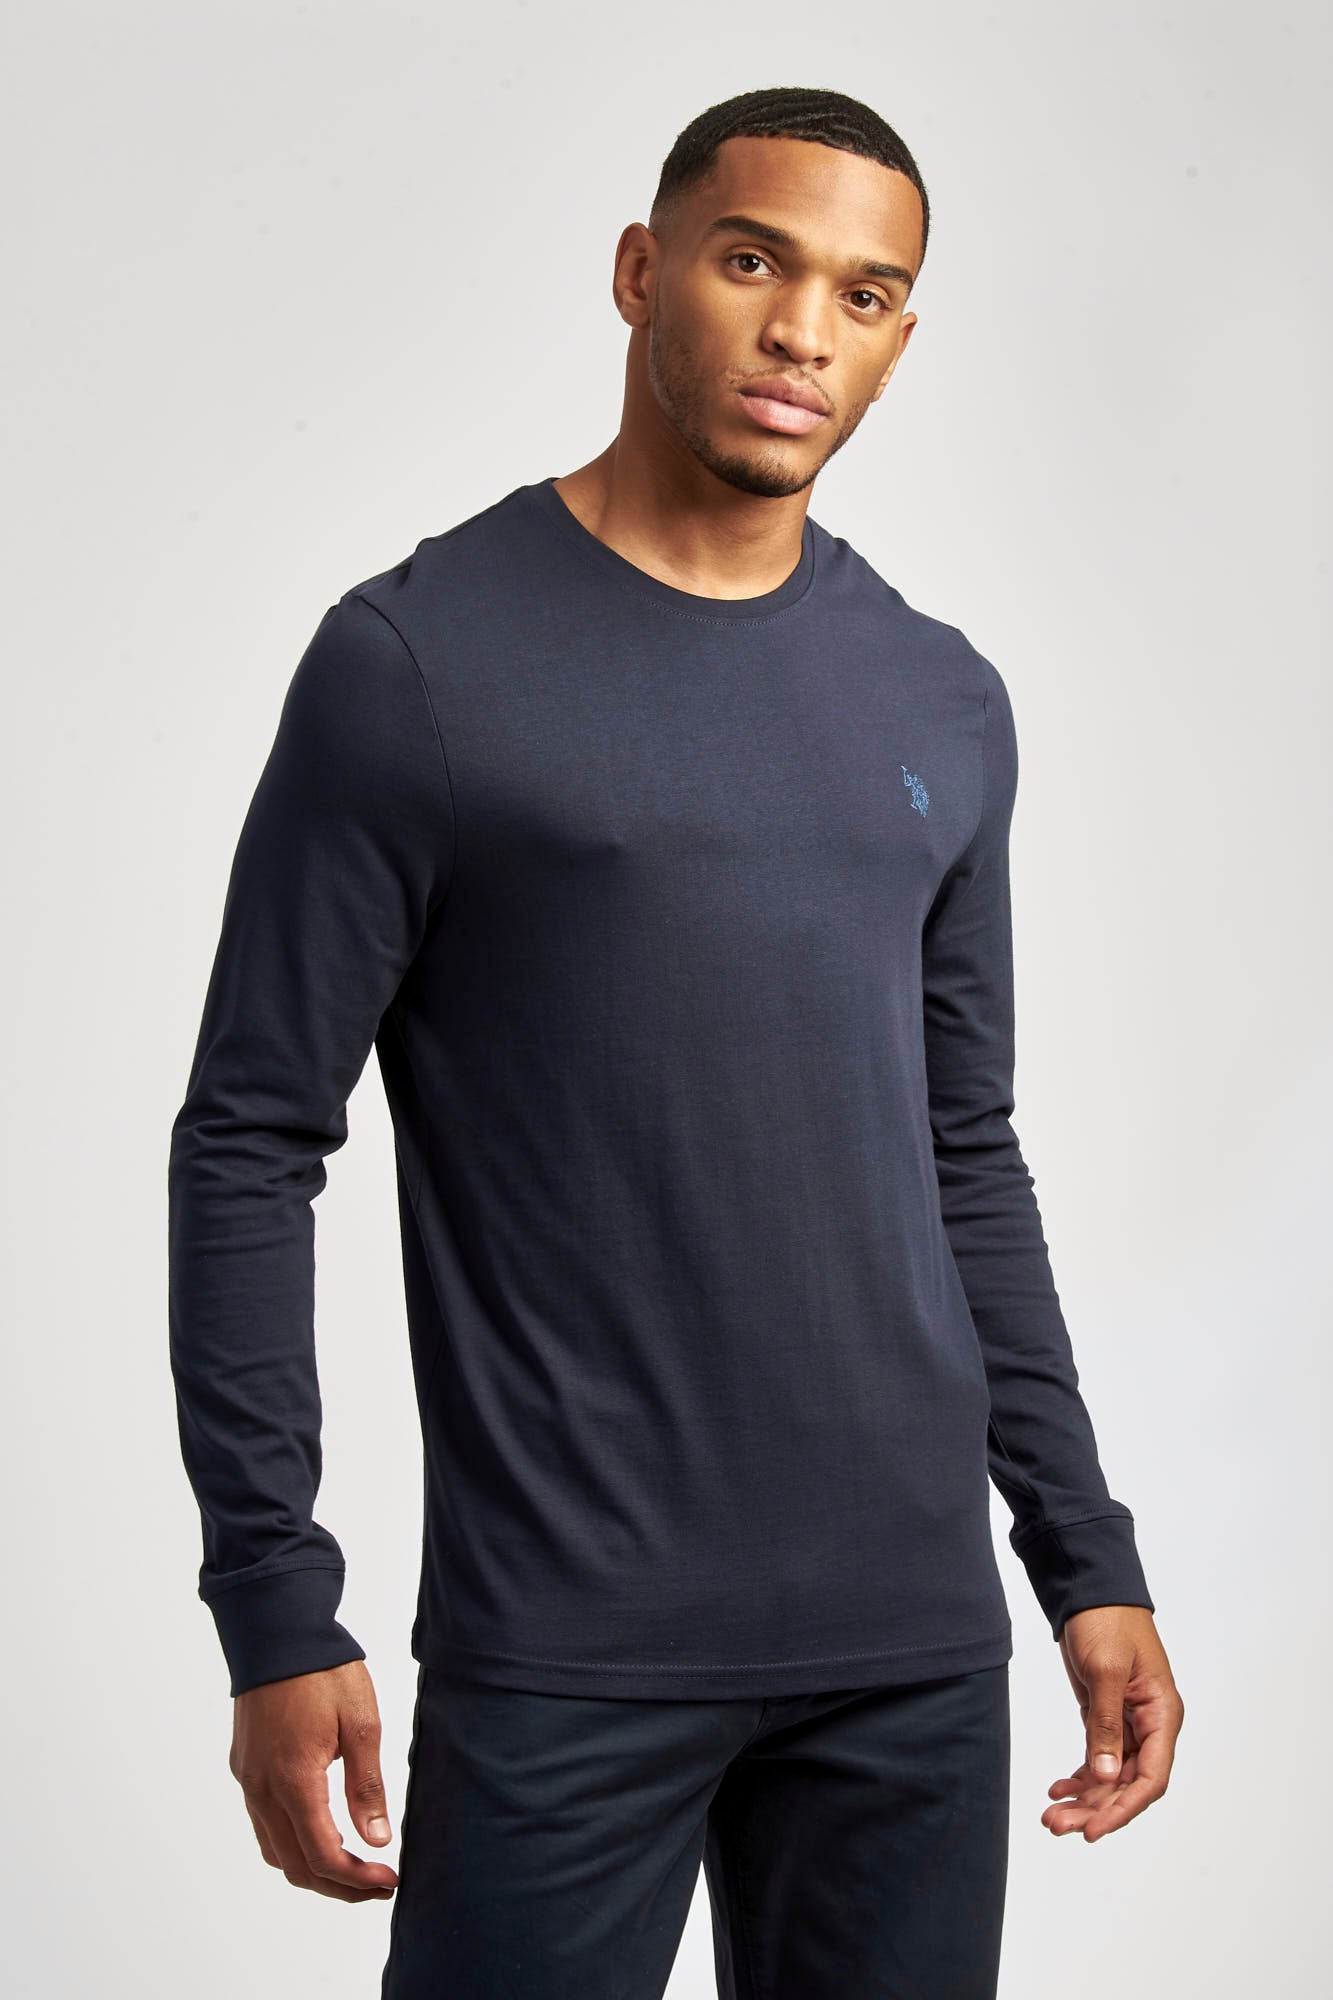 U.S. Polo Assn. Long Sleeve T-Shirt - Navy, Navy, Size XL, Men